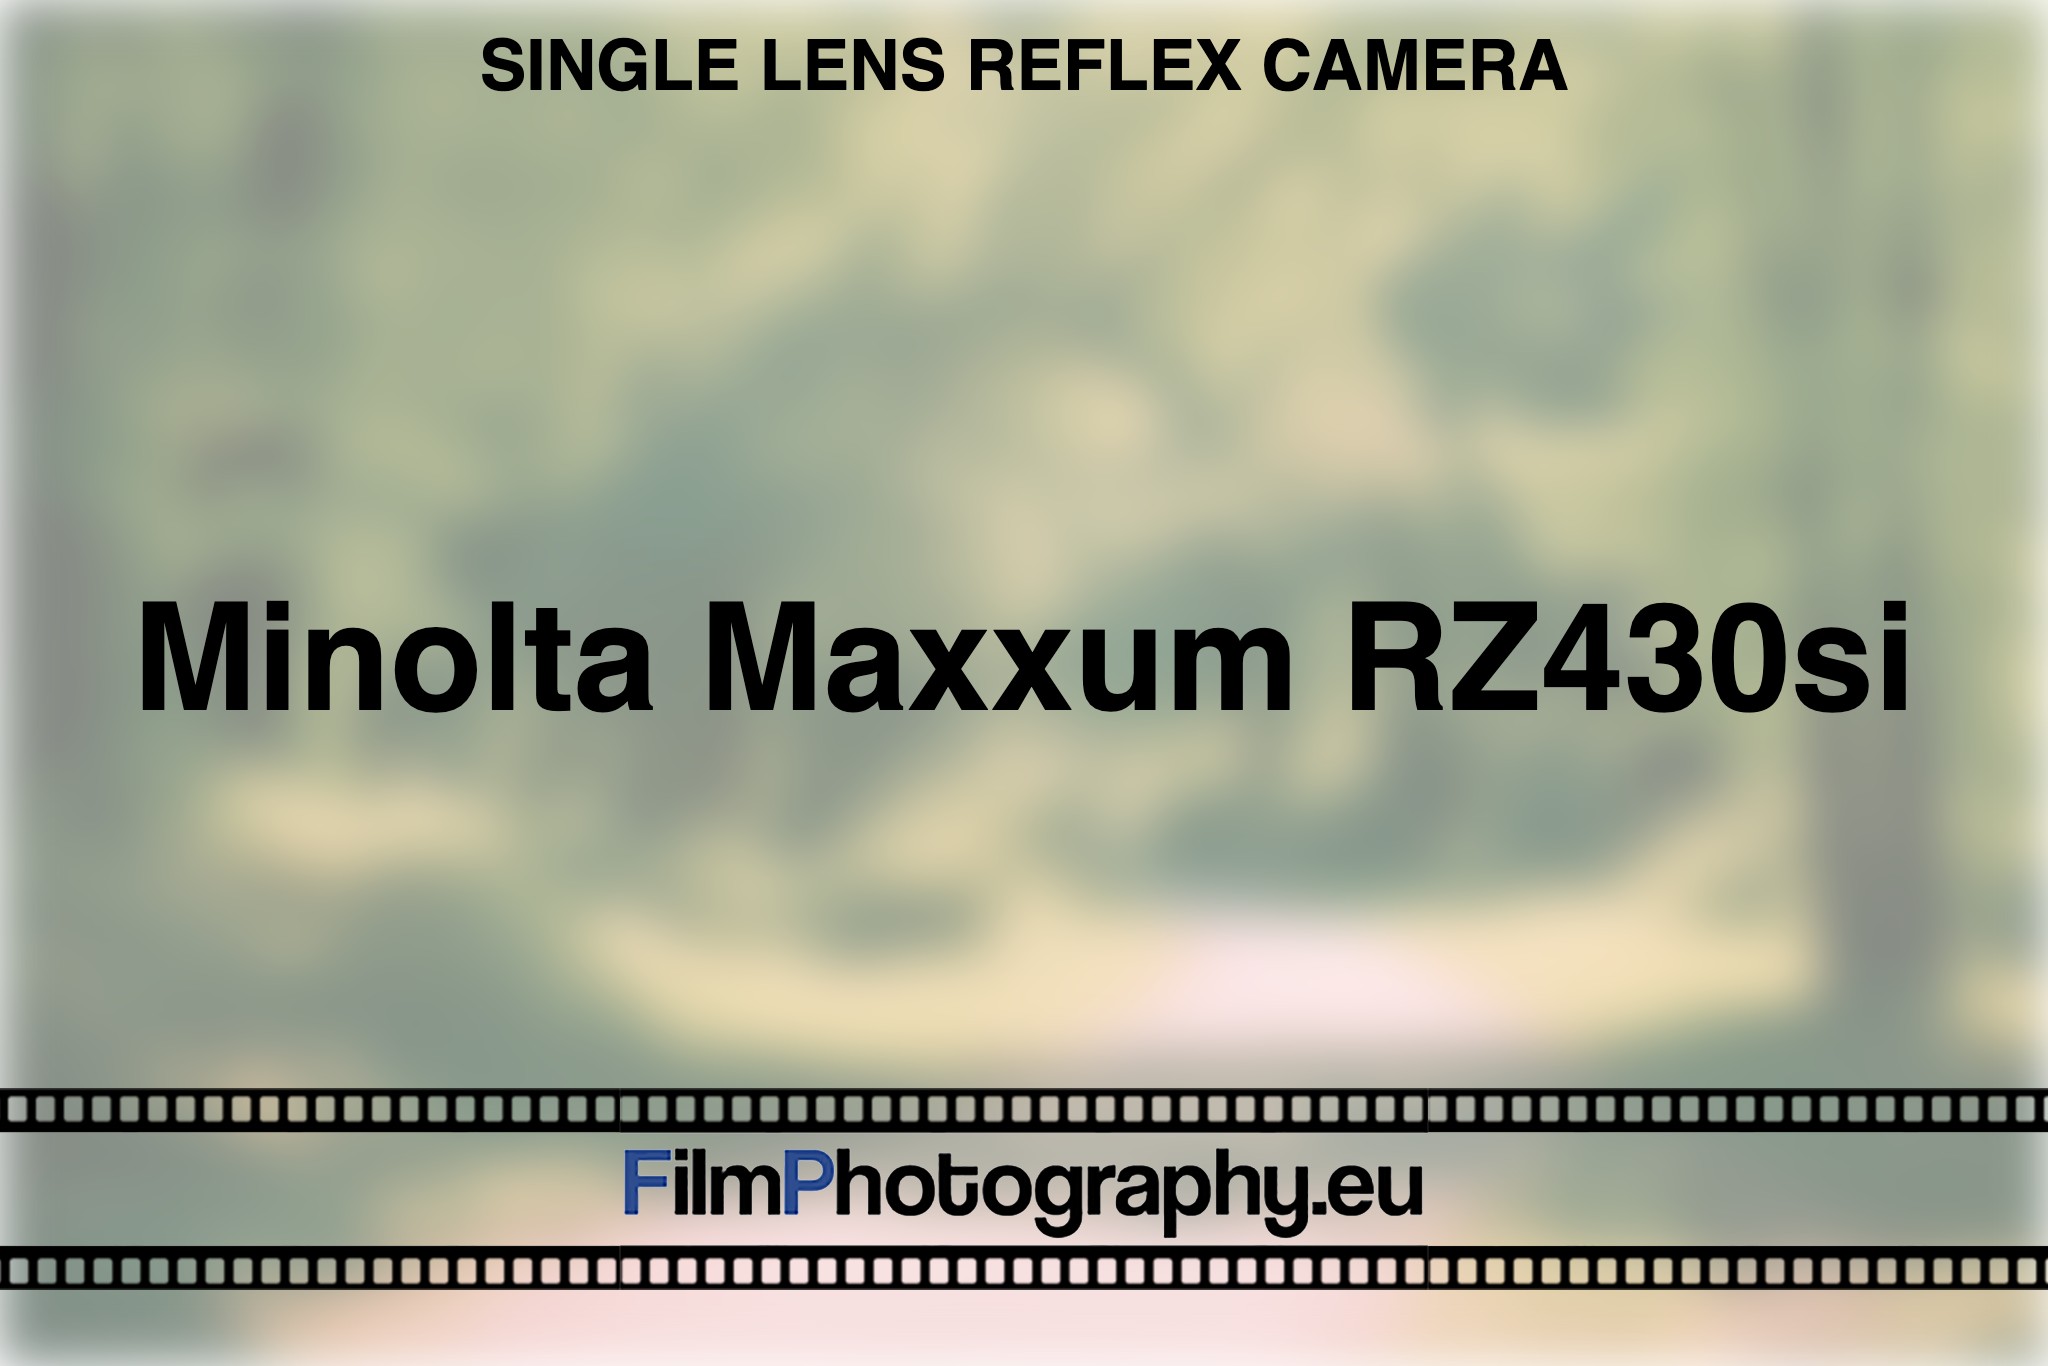 minolta-maxxum-rz430si-single-lens-reflex-camera-bnv